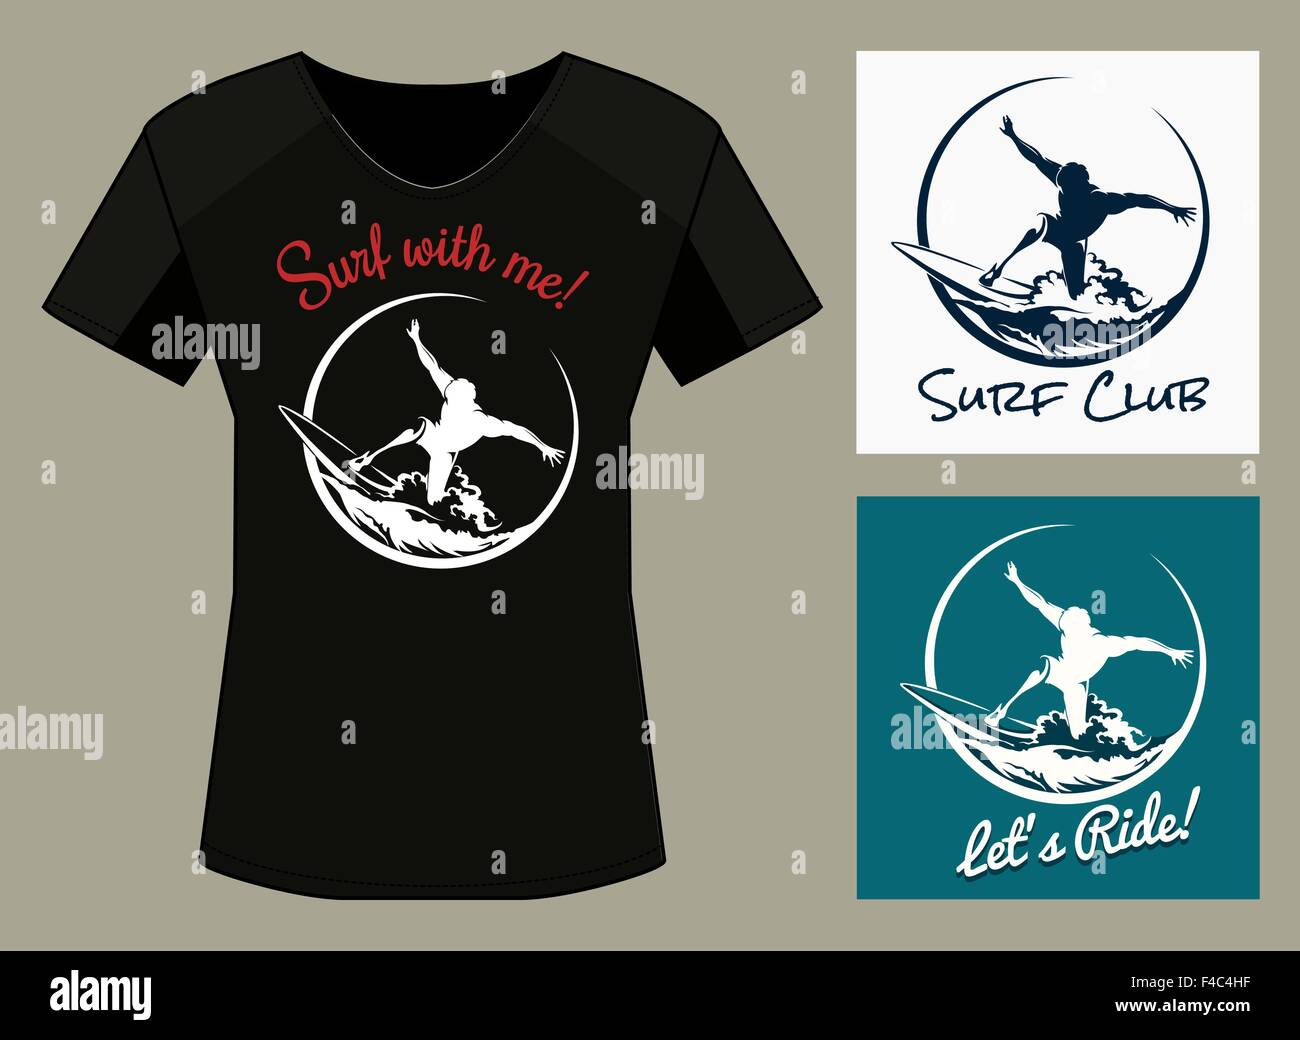 T-Shirt Stampa in tre varianti di colore. Surfer Club Print Design con campioni di testo. Gratuito solo font utilizzato. Illustrazione Vettoriale